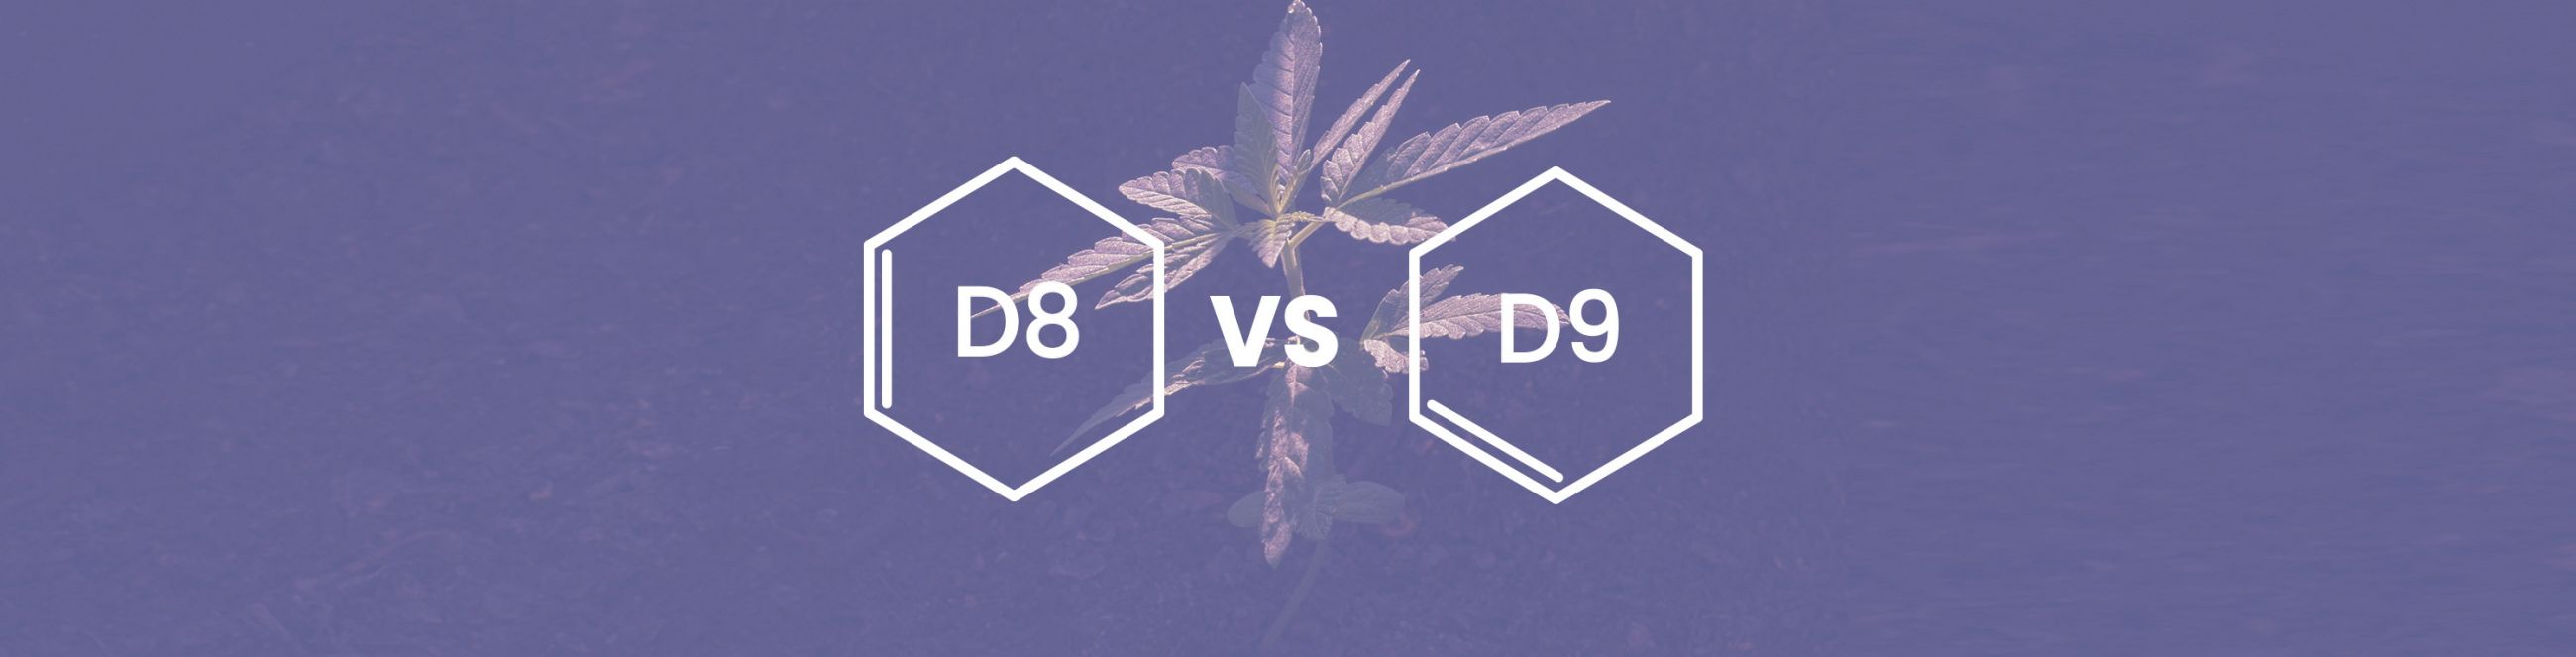 Delta 8 vs. Delta 9 The Two Most Popular Cannabinoids